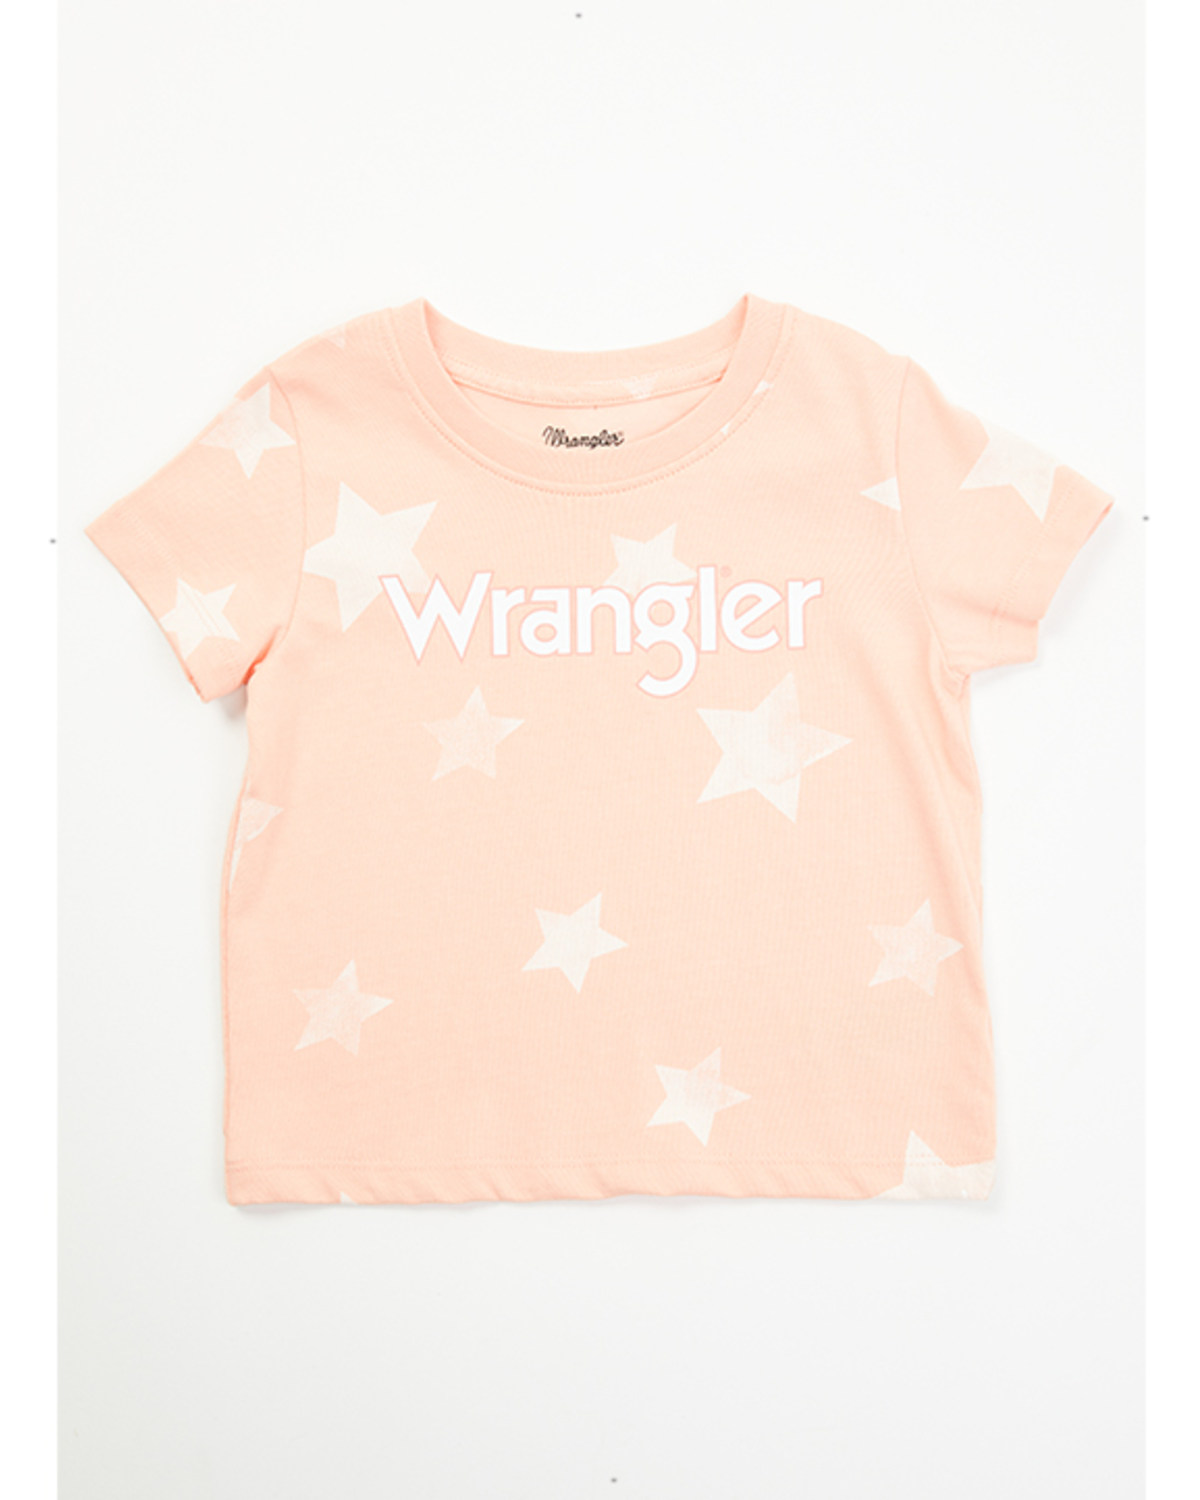 Wrangler Toddler Girls' Star Print Short Sleeve Graphic Tee